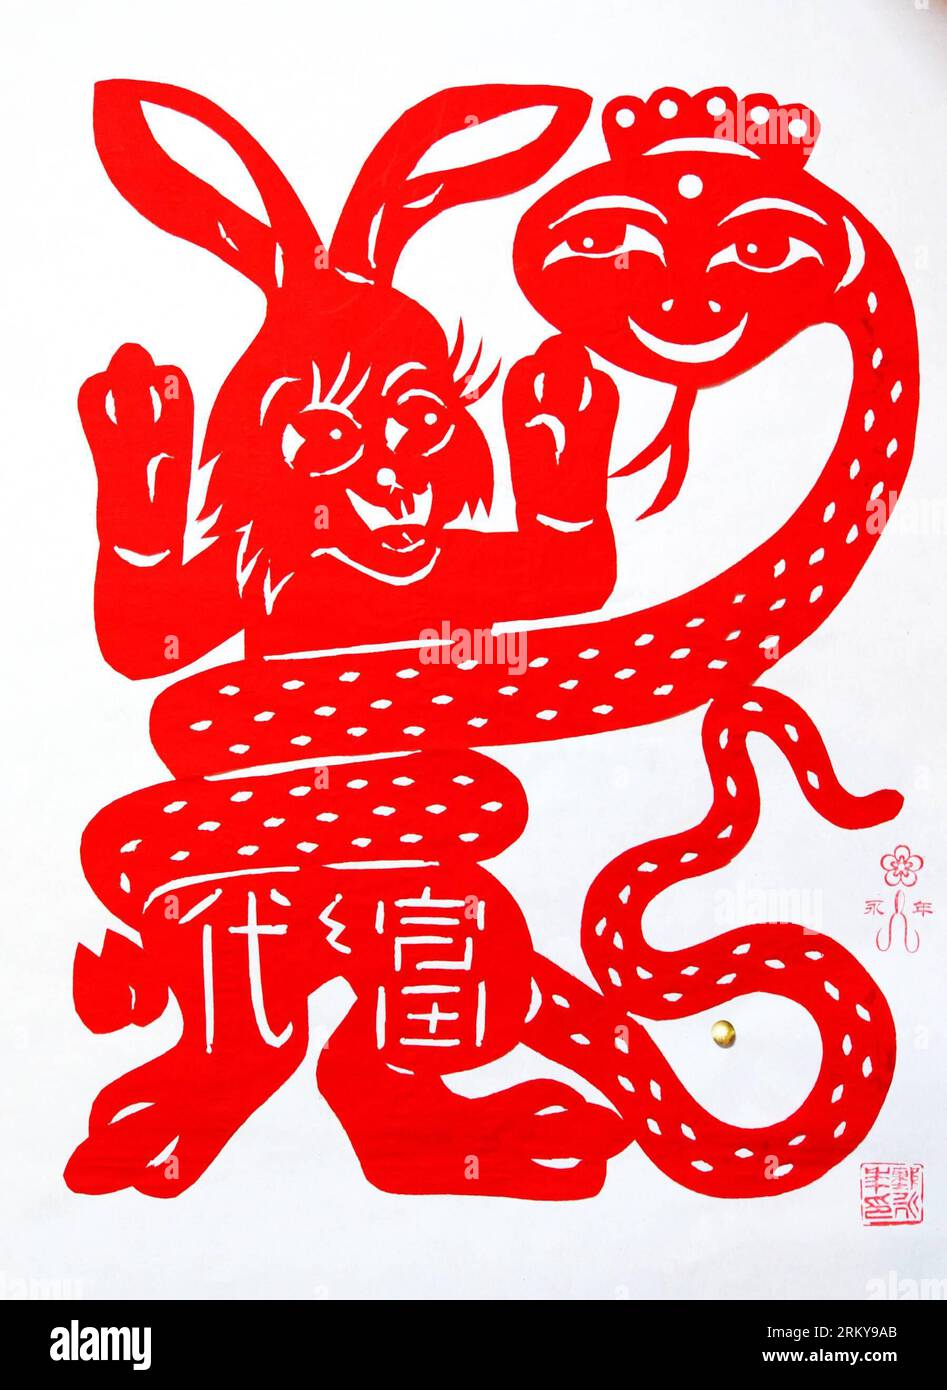 Bildnummer : 59172380 Datum : 04.02.2013 Copyright : imago/Xinhua (130204) -- XUZHOU, 4 février 2013 (Xinhua) -- la photo prise le 4 février 2013 montre la découpe de papier par l'artiste folklorique Chen Yongnian à Xuzhou, dans la province du Jiangsu de l'est de la Chine. Chen a passé plus d'un mois à créer plus de 130 œuvres d'art découpées de serpents pour célébrer la prochaine année chinoise du serpent. (Xinhua/Li Ming) (mp) CHINA-JIANGSU-XUZHOU-PAPER-CUT ARTIST (CN) PUBLICATIONxNOTxINxCHN Kultur Tradition Kunsthandwerk Papierschnitt Jahr der Schlange x0x xst 2013 hoch 59172380 Date 04 02 2013 Copyright Imago XINHUA Xuzhou F Banque D'Images